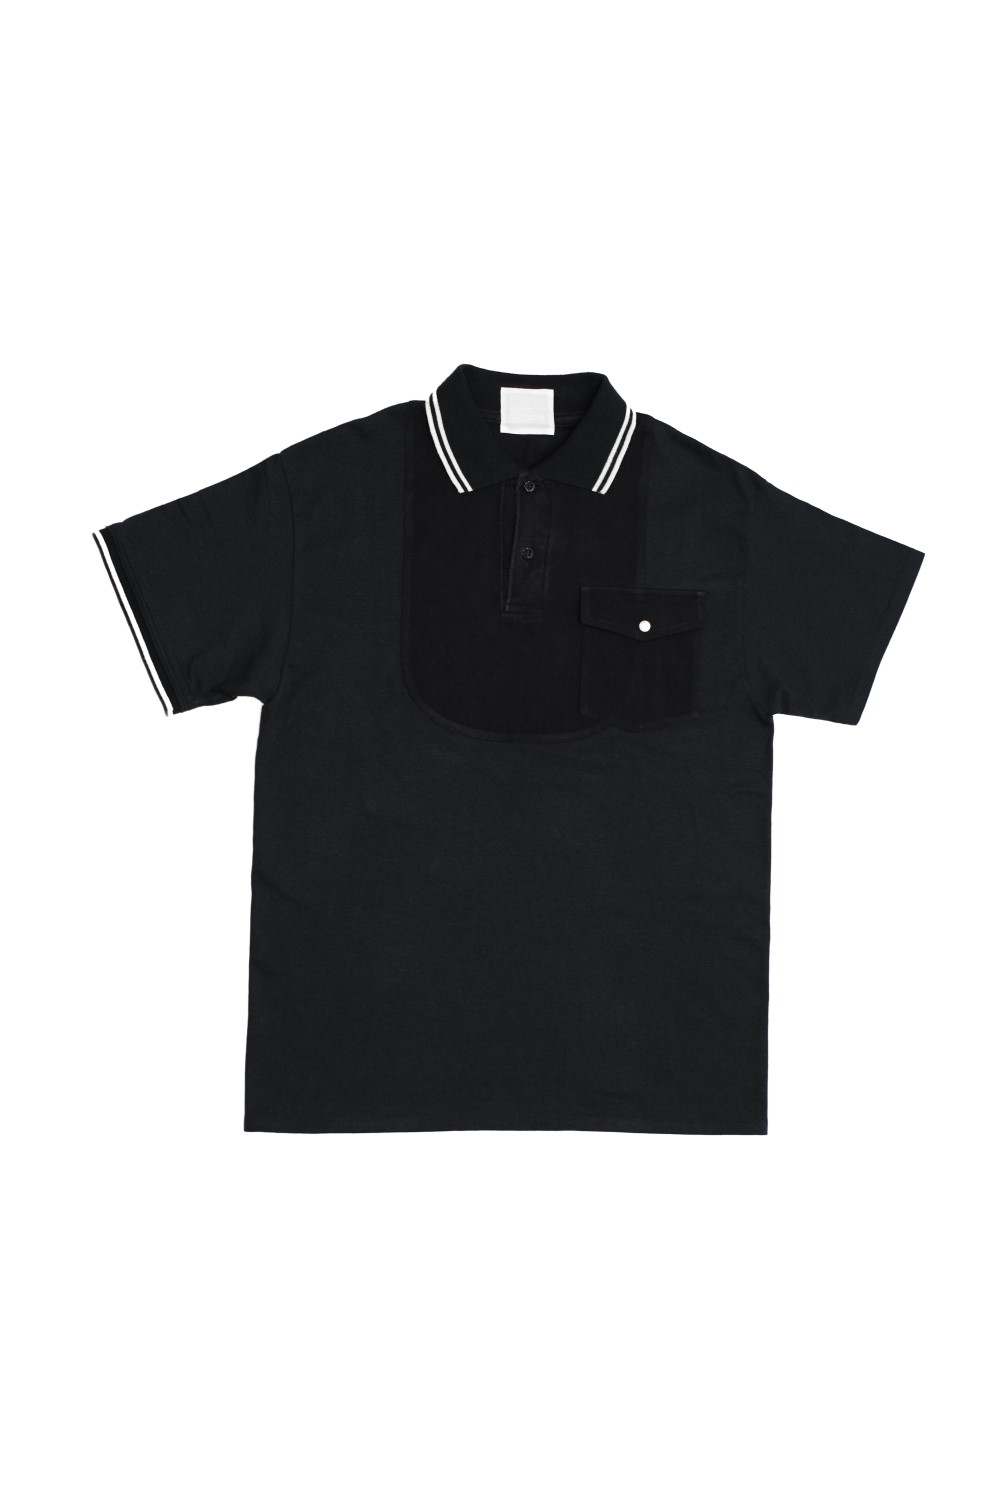 remake polo shirt black